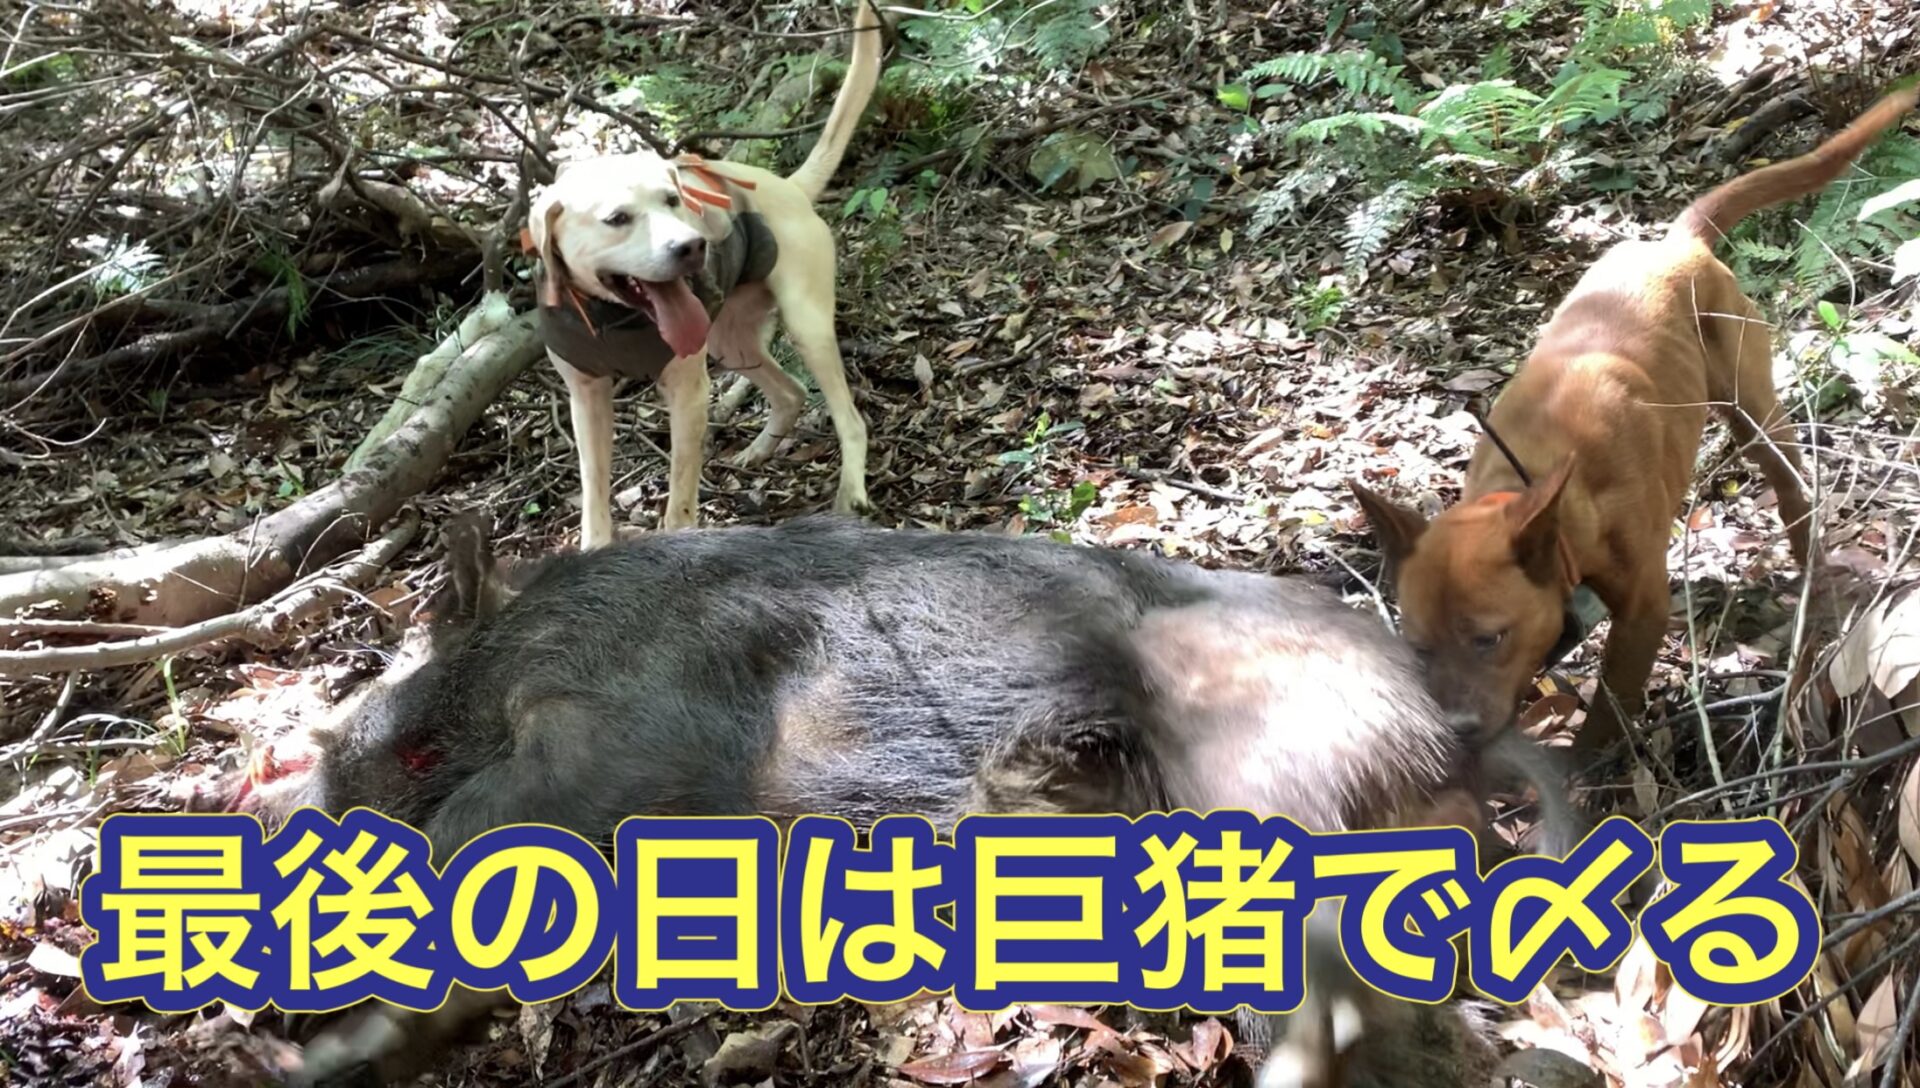 猟犬カシンが生い茂る孟宗竹で、巨猪を起こして撃たせて獲る劇的な結末で今期終猟